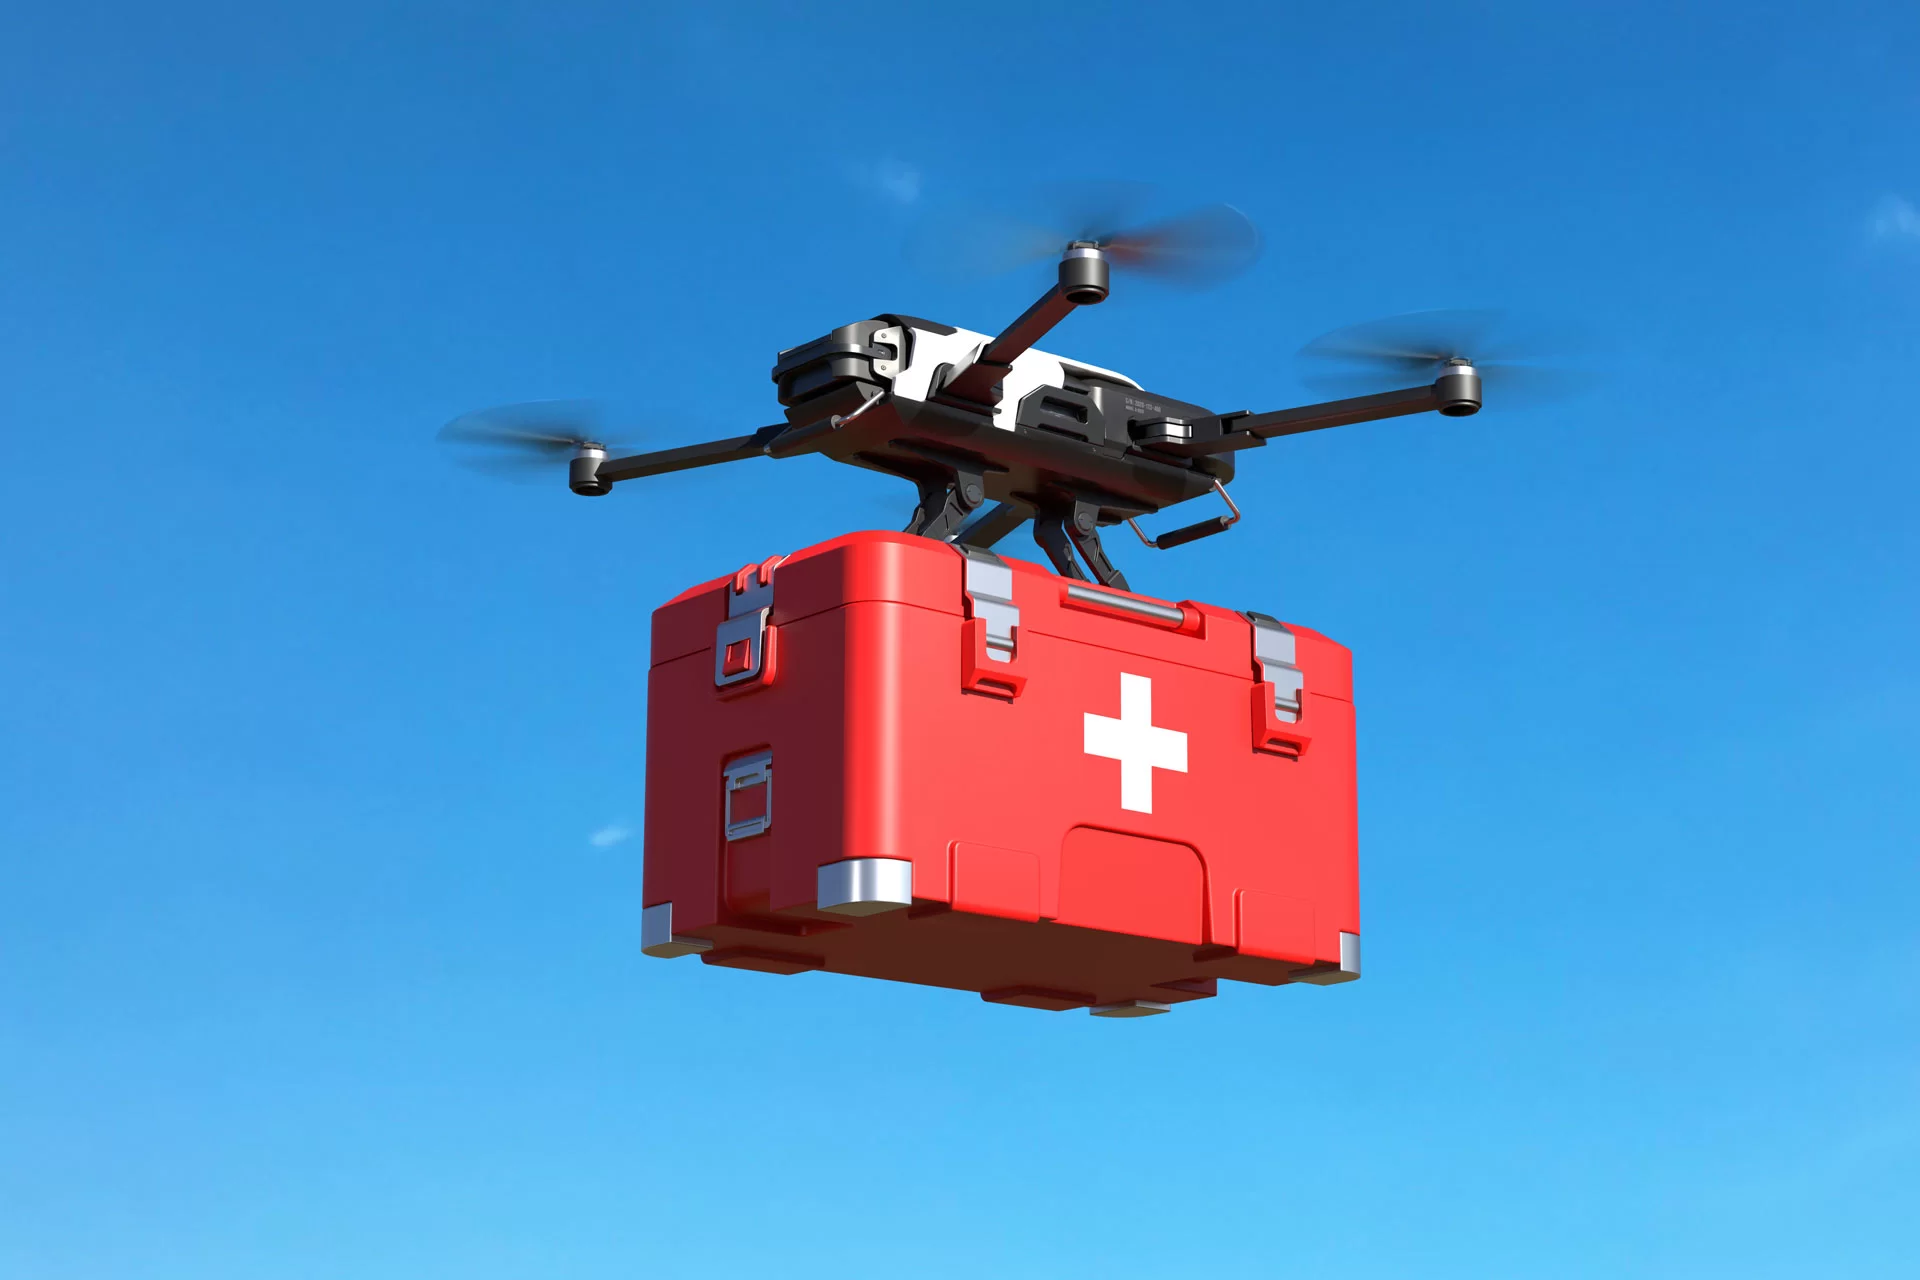  ‣ adn24 cosenza | arresto cardiaco: il drone del 118 è più veloce dell'ambulanza